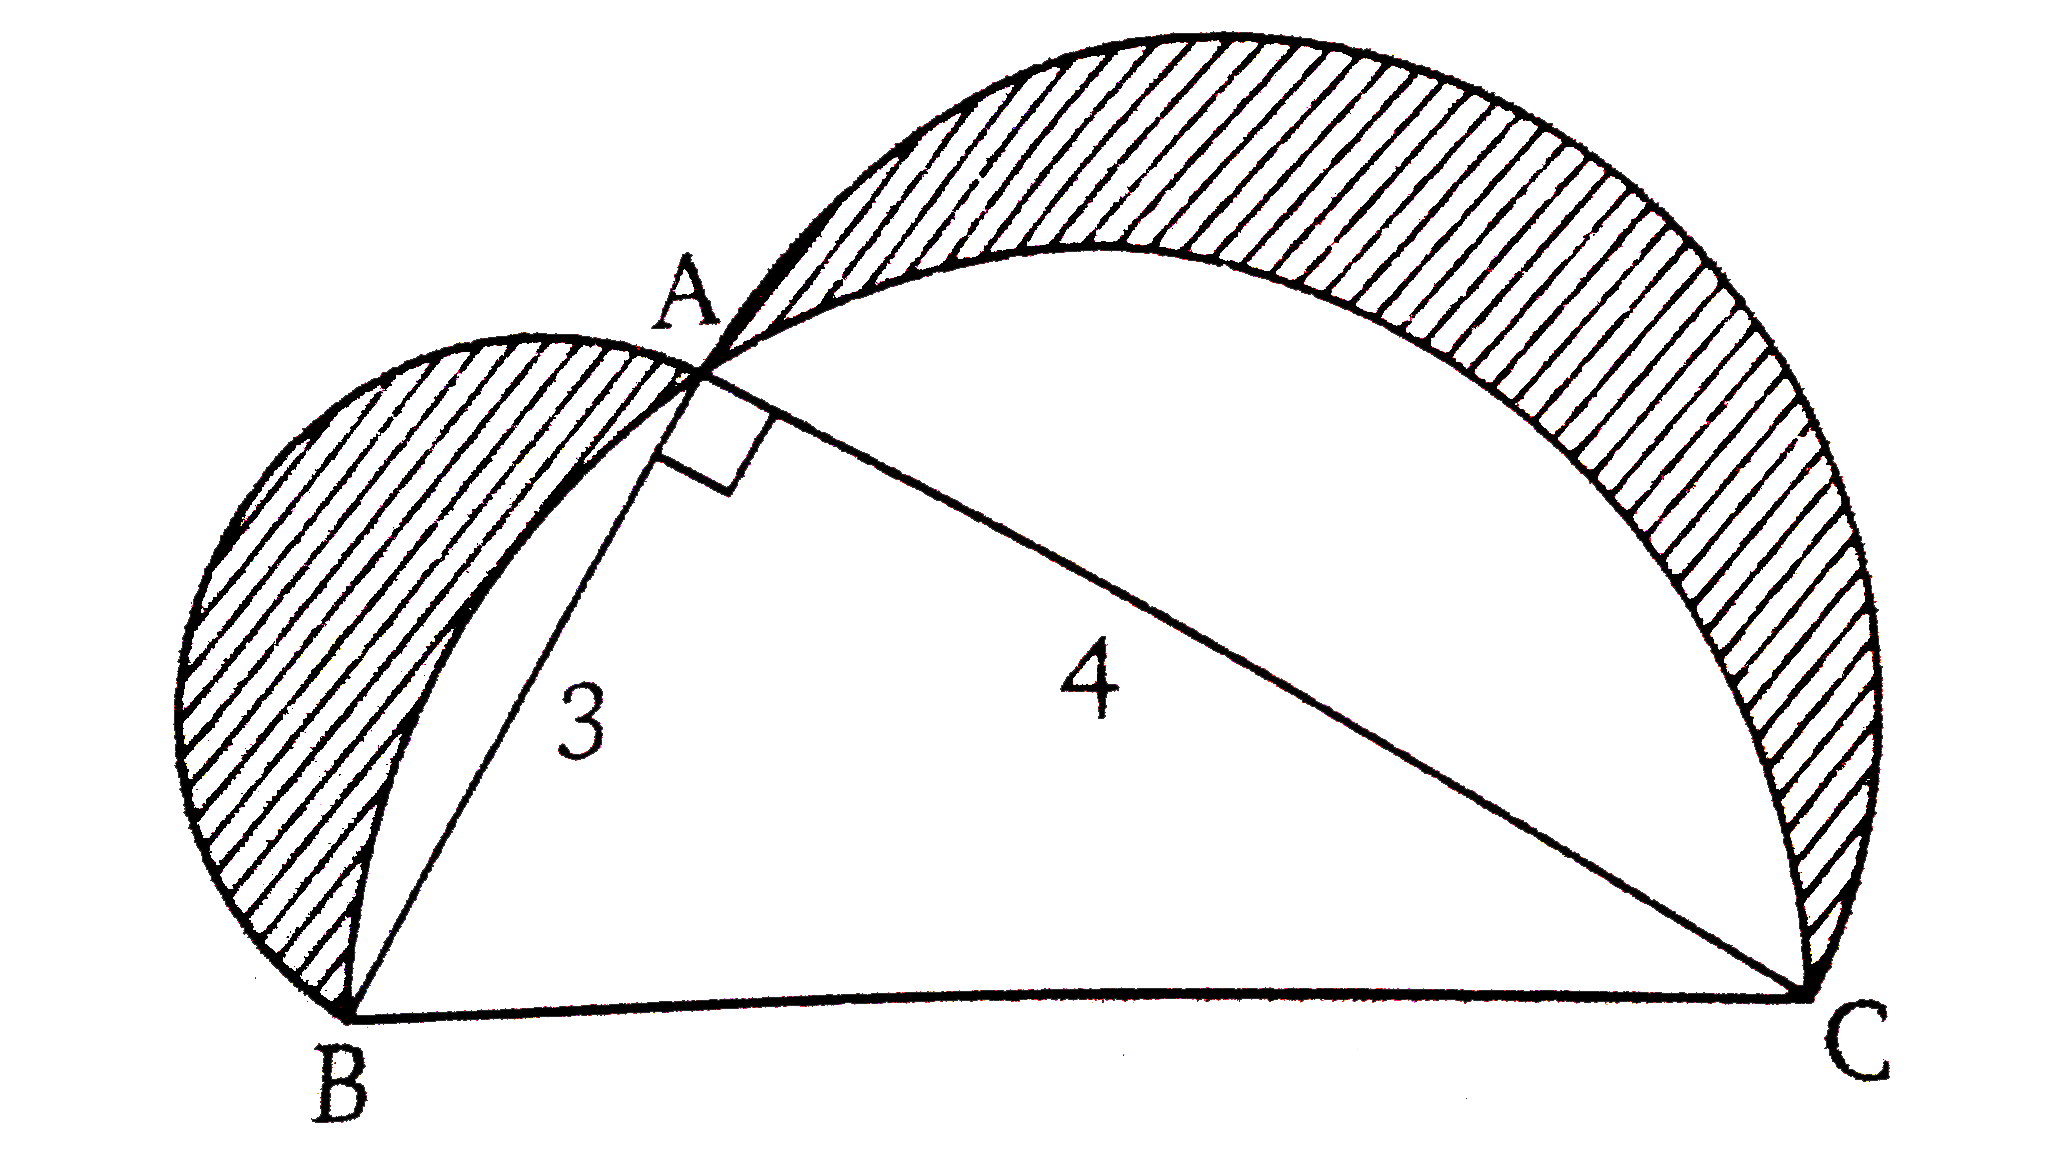 चित्र में DeltaABC एक समकोण त्रिभुज है जो A पर समकोण बनाता है AB,AC व BC को व्यास मानकर अर्द्धवृत्त खींचे गये है छायांकित भाग क्षेत्रफल ज्ञात कीजिए ।